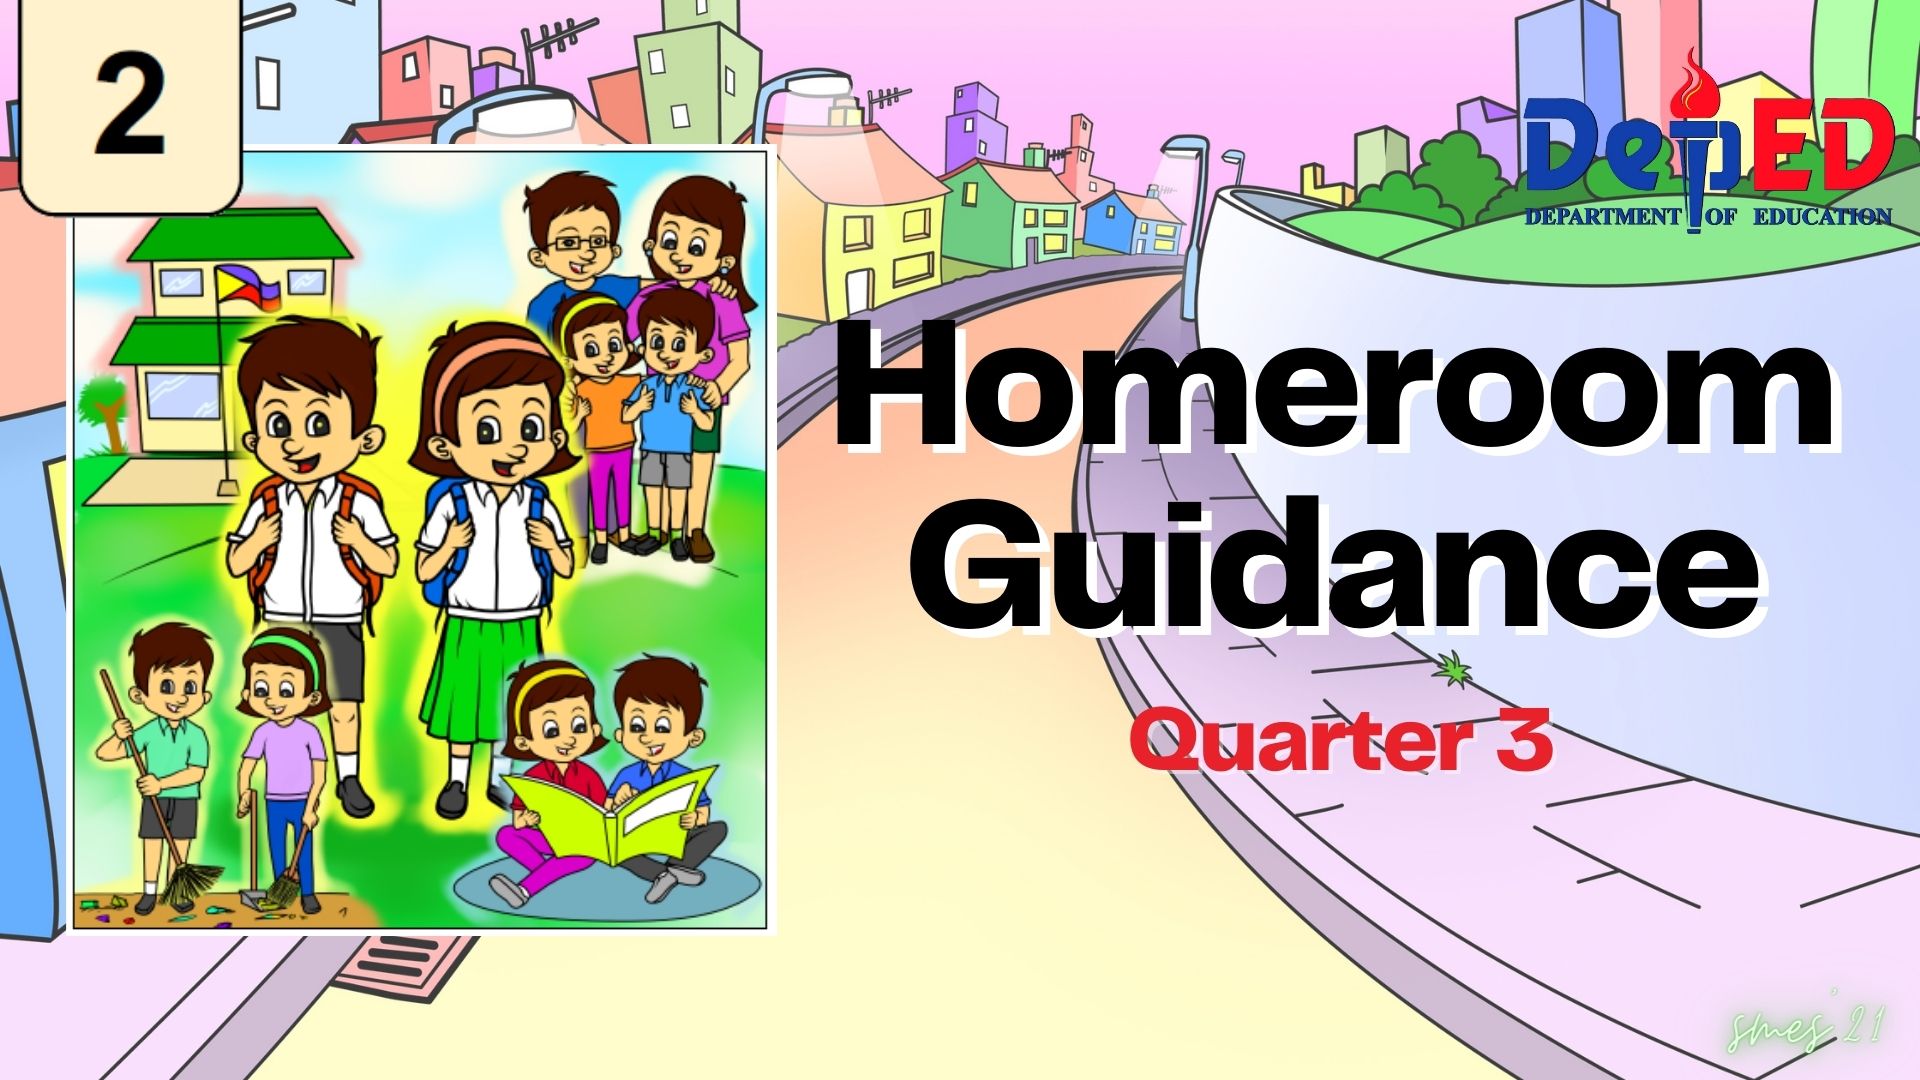 G2 - Homeroom Guidance Quarter 3 